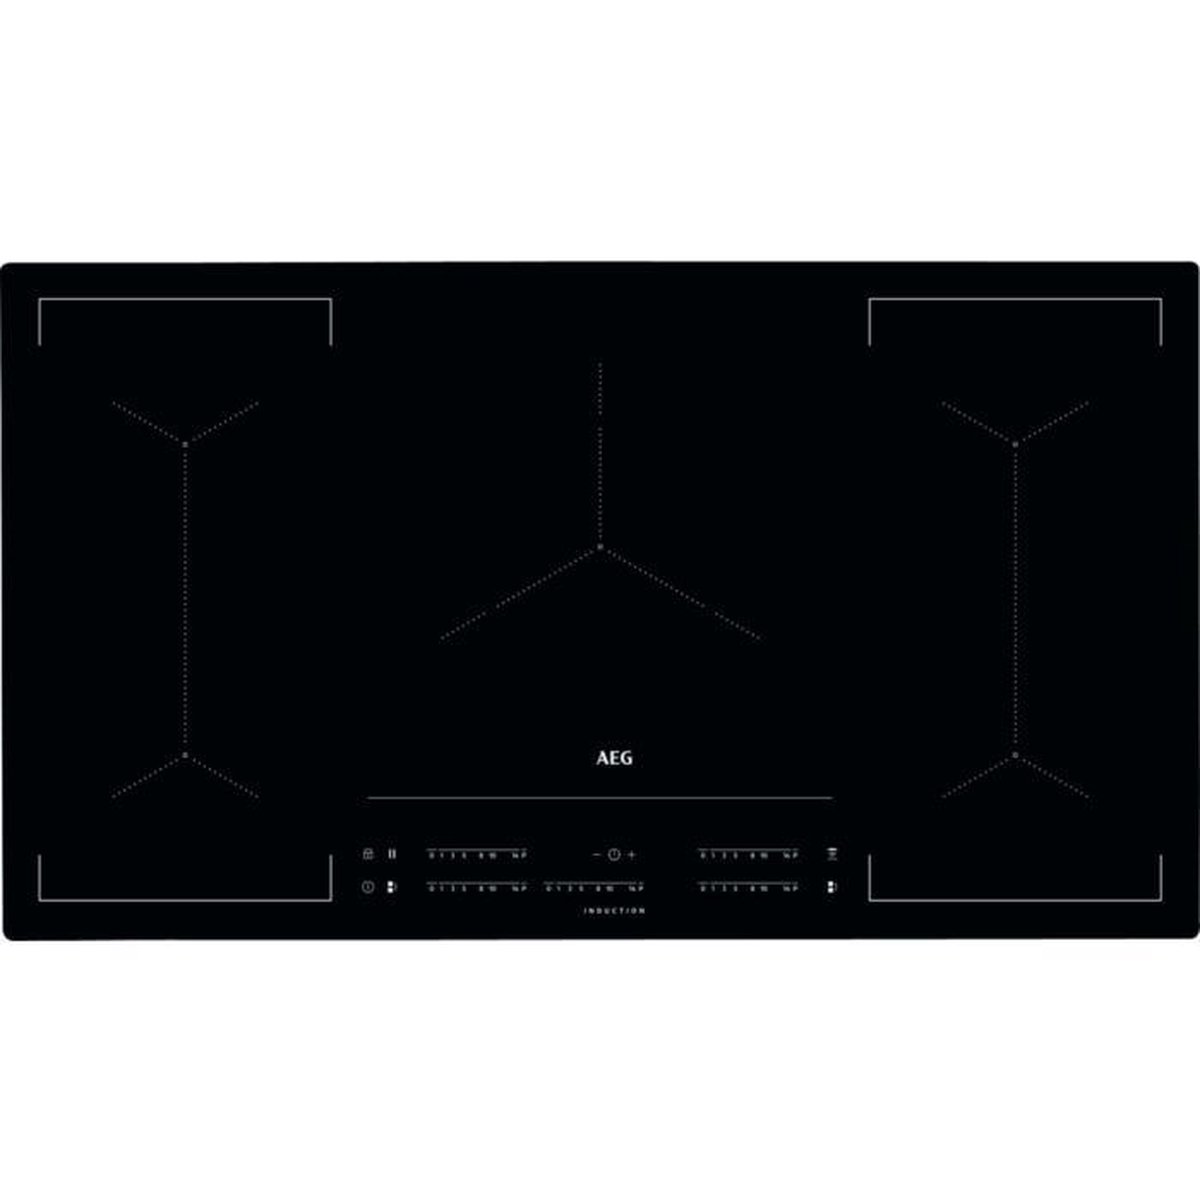 AEG MultipleBridge inductie kookplaat IKE95454IB - Zwart